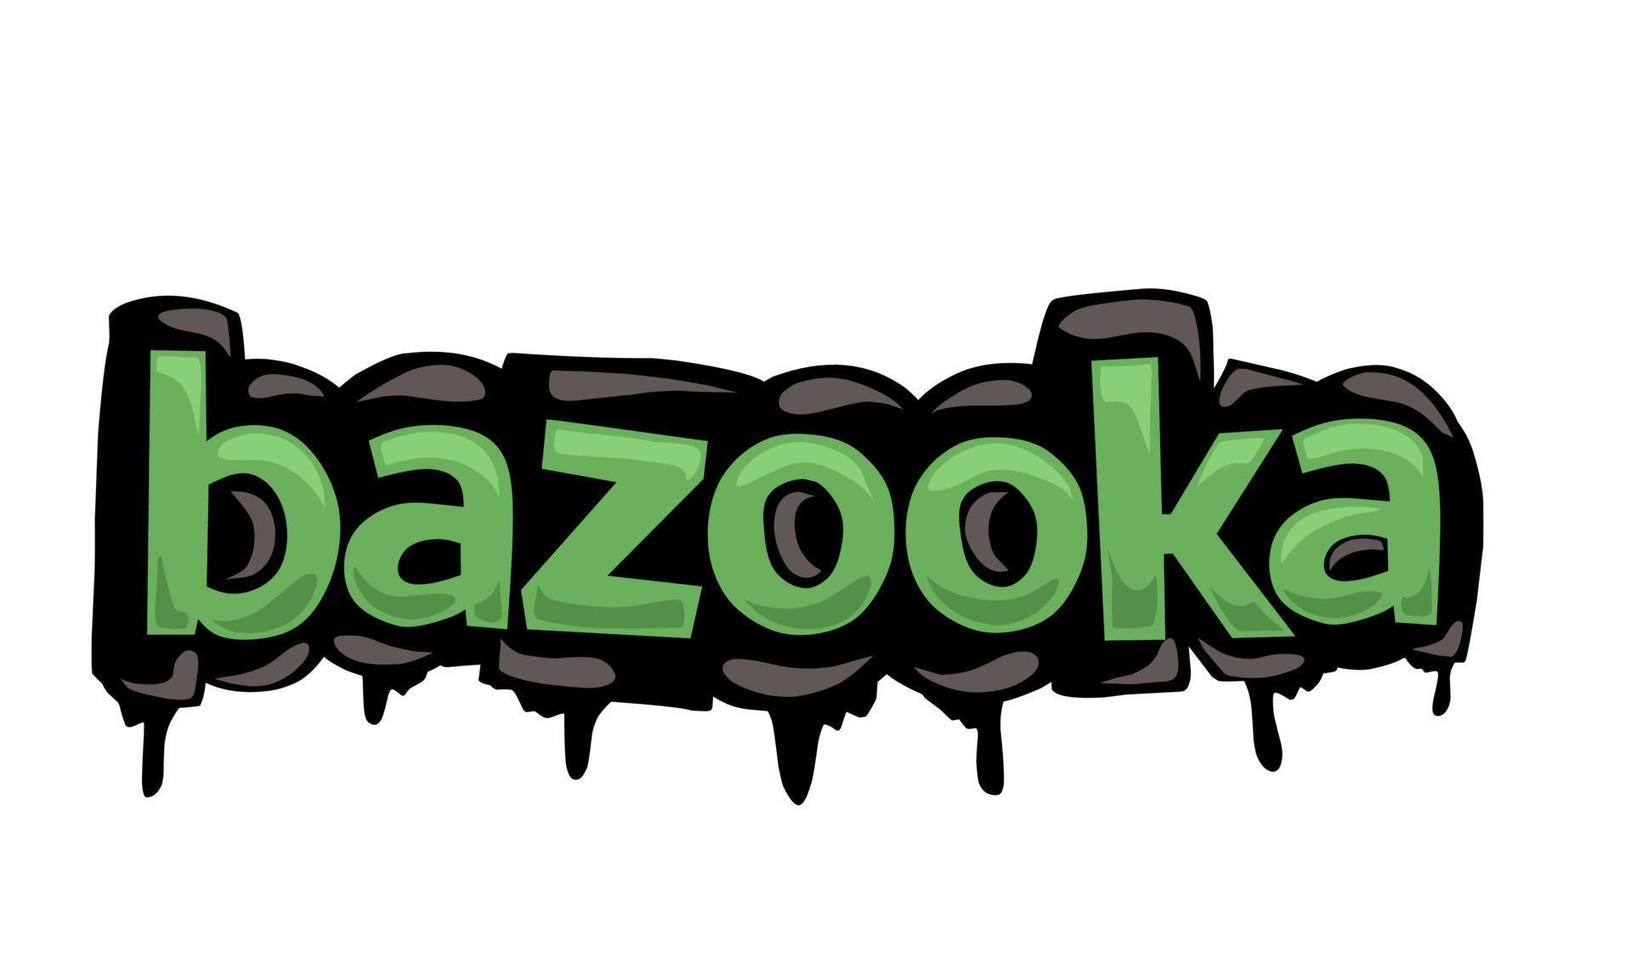 conception de vecteur d'écriture bazooka sur fond blanc